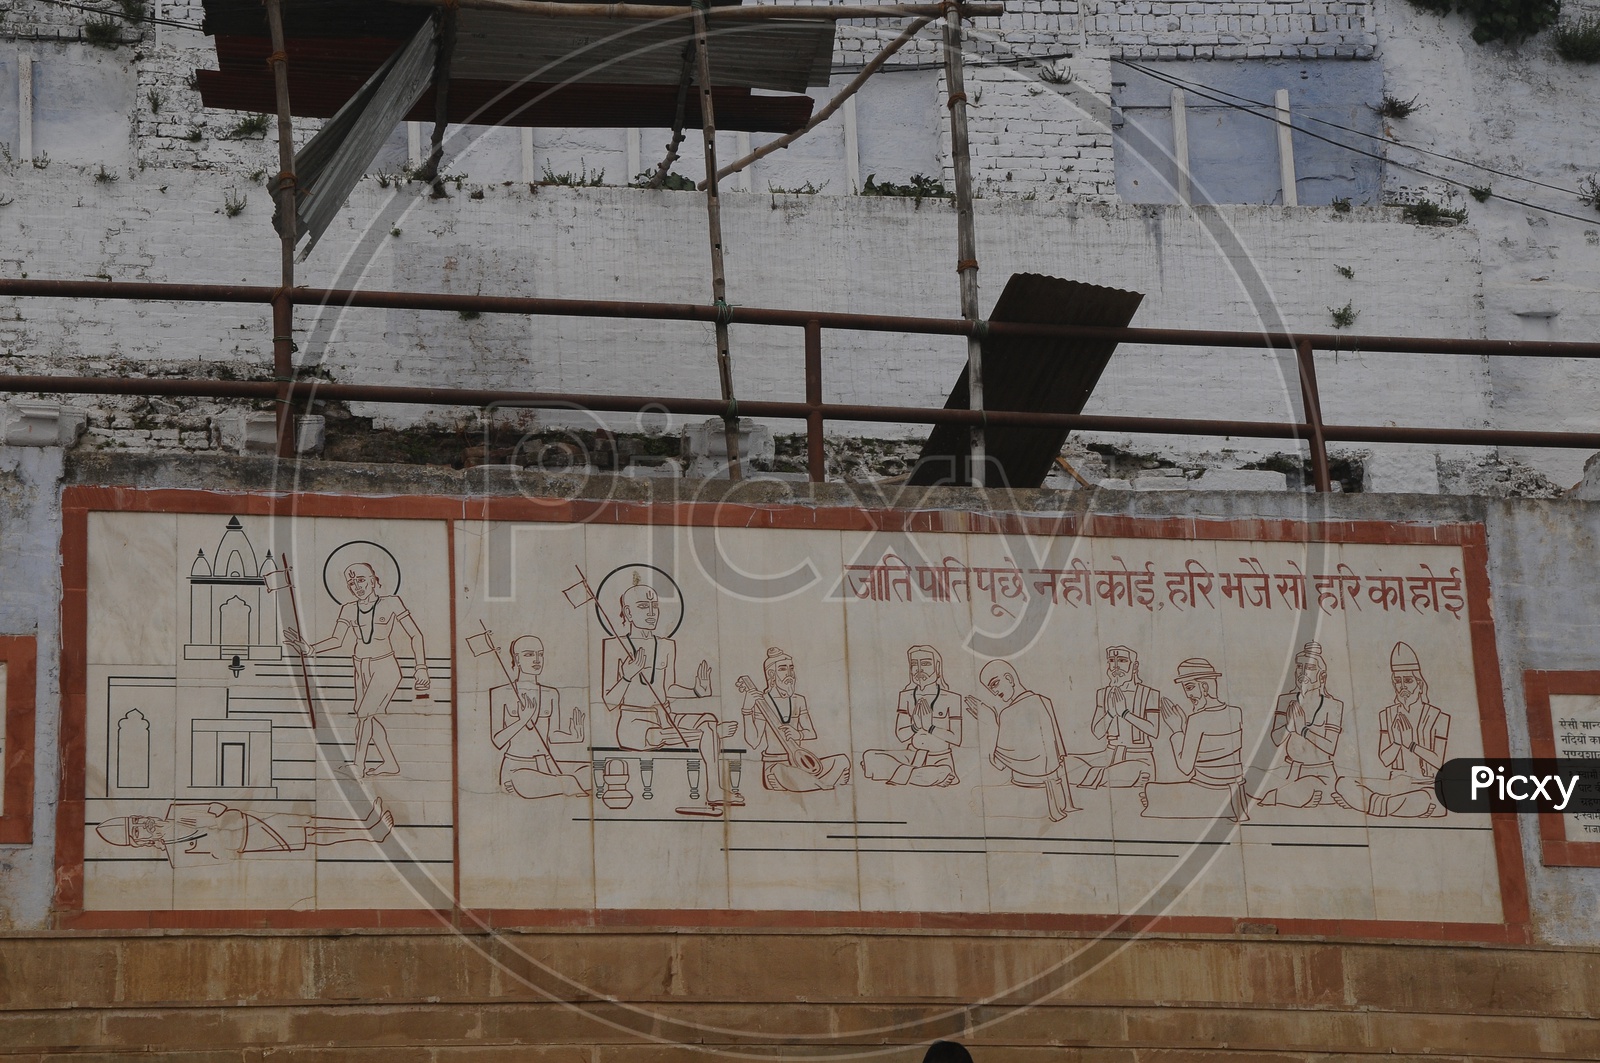 Wall Arts Against Caste And Religion At Matt In Varanasi